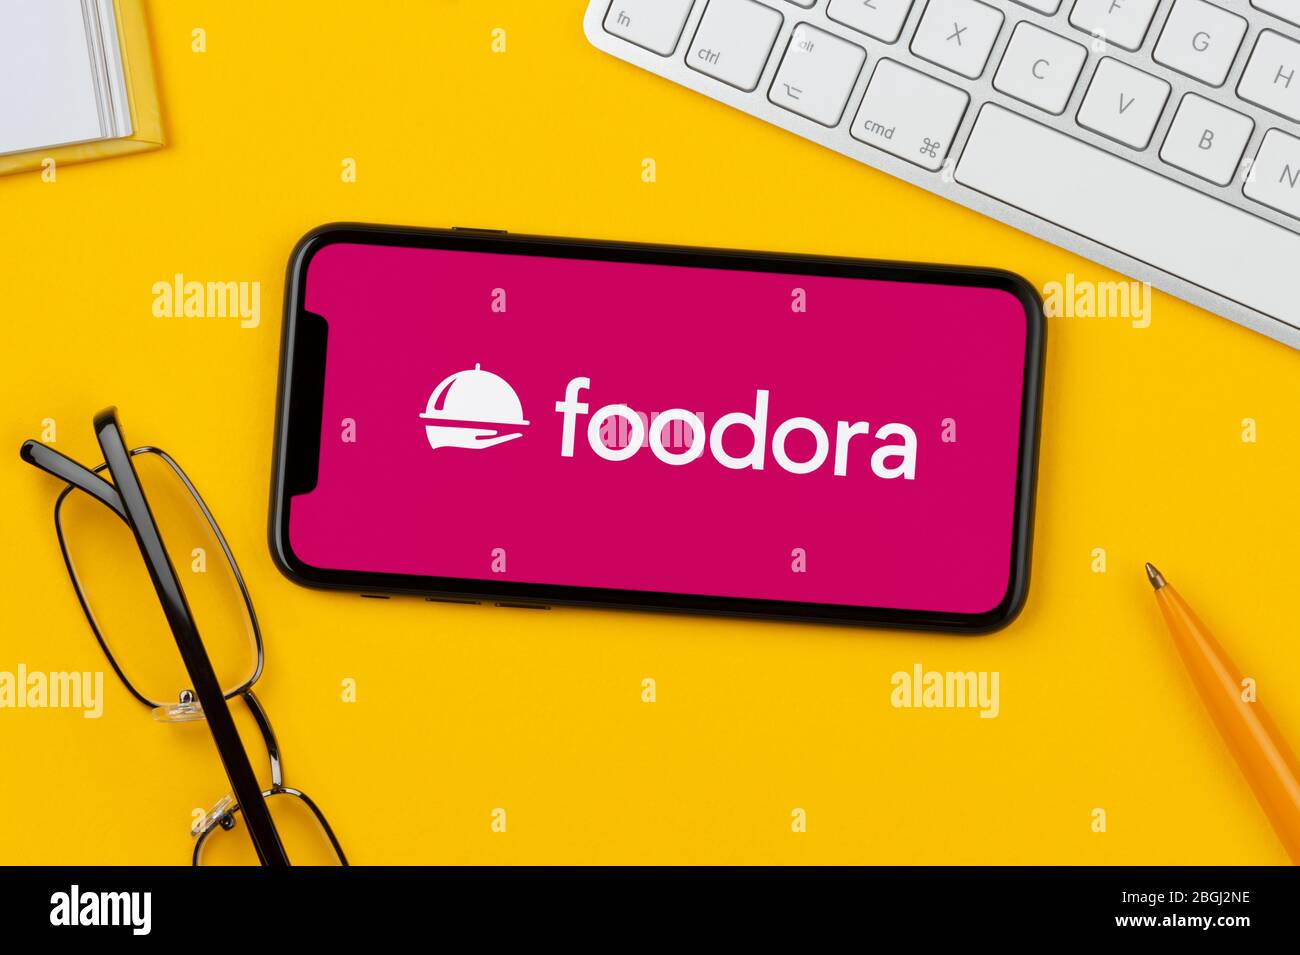 Un smartphone que muestra el logotipo de Foodora descansa sobre un fondo amarillo junto con un teclado, gafas, lápiz y libro (sólo para uso editorial). Foto de stock